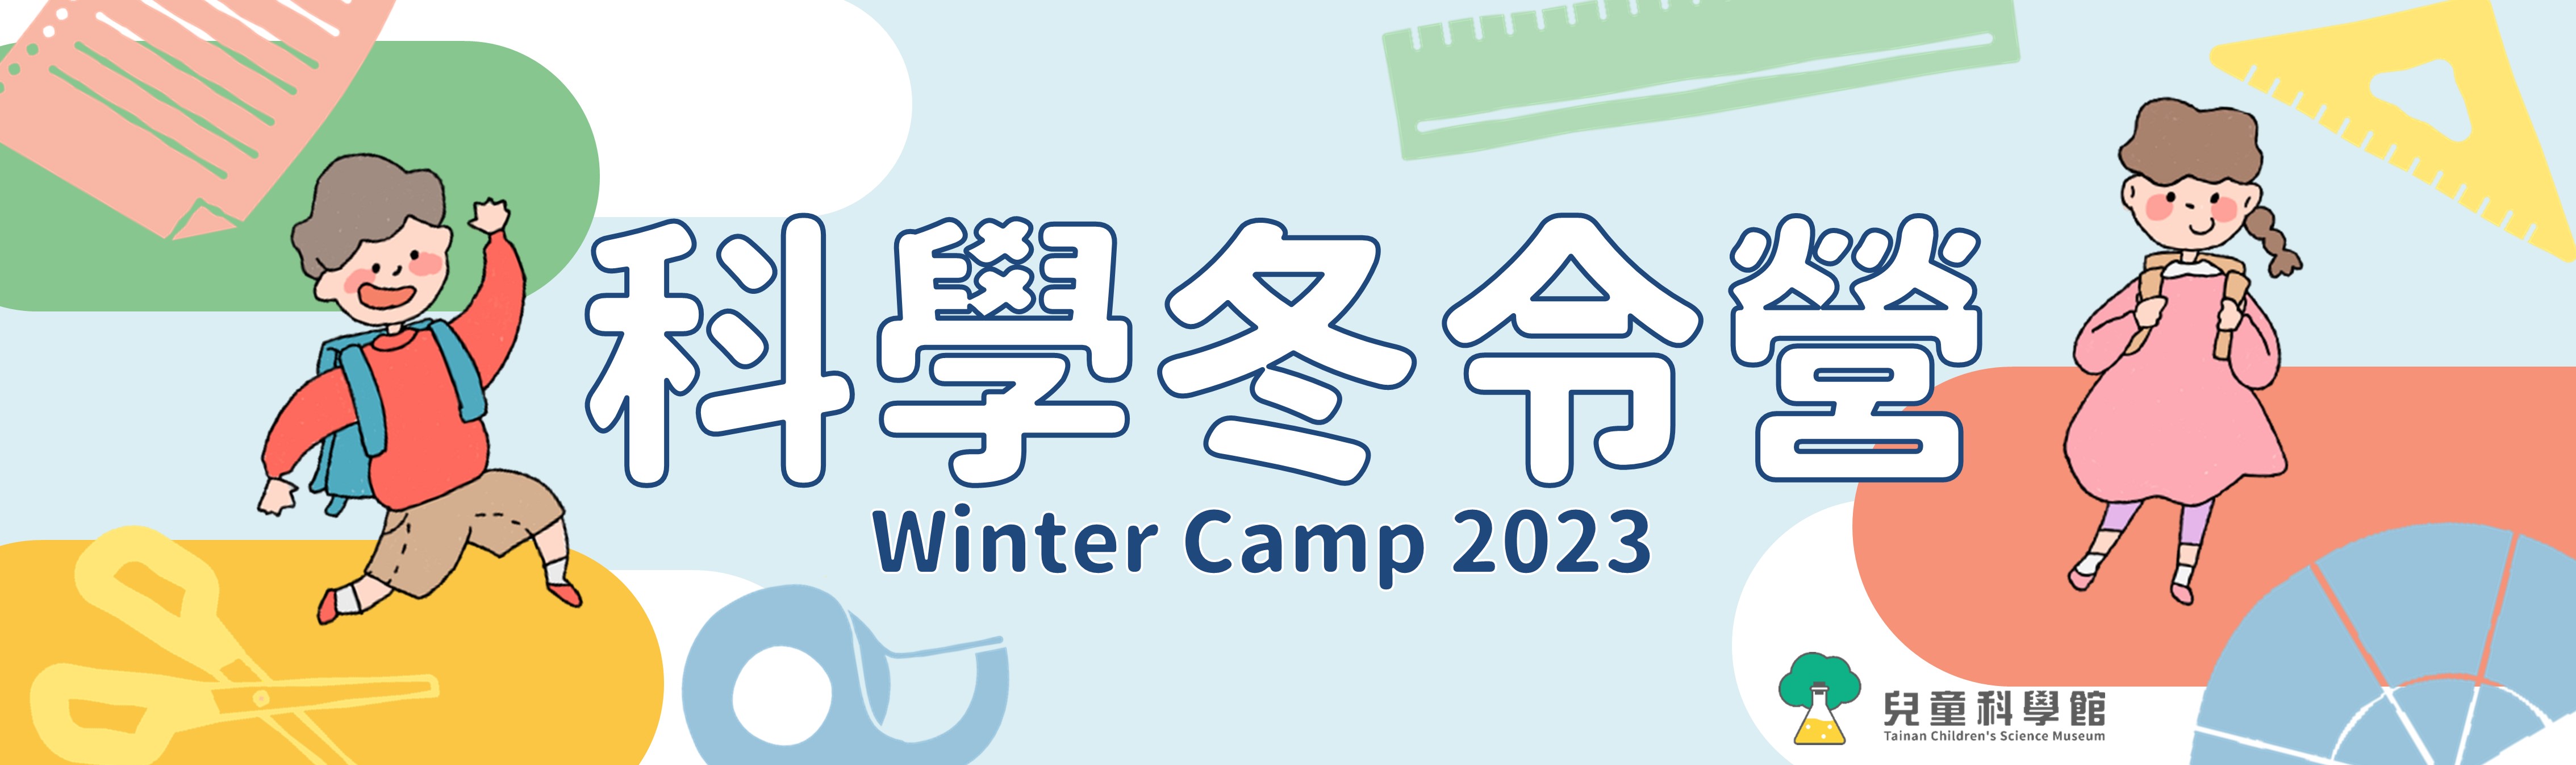 【冬令營】2023 兒童科學館科學冬令營